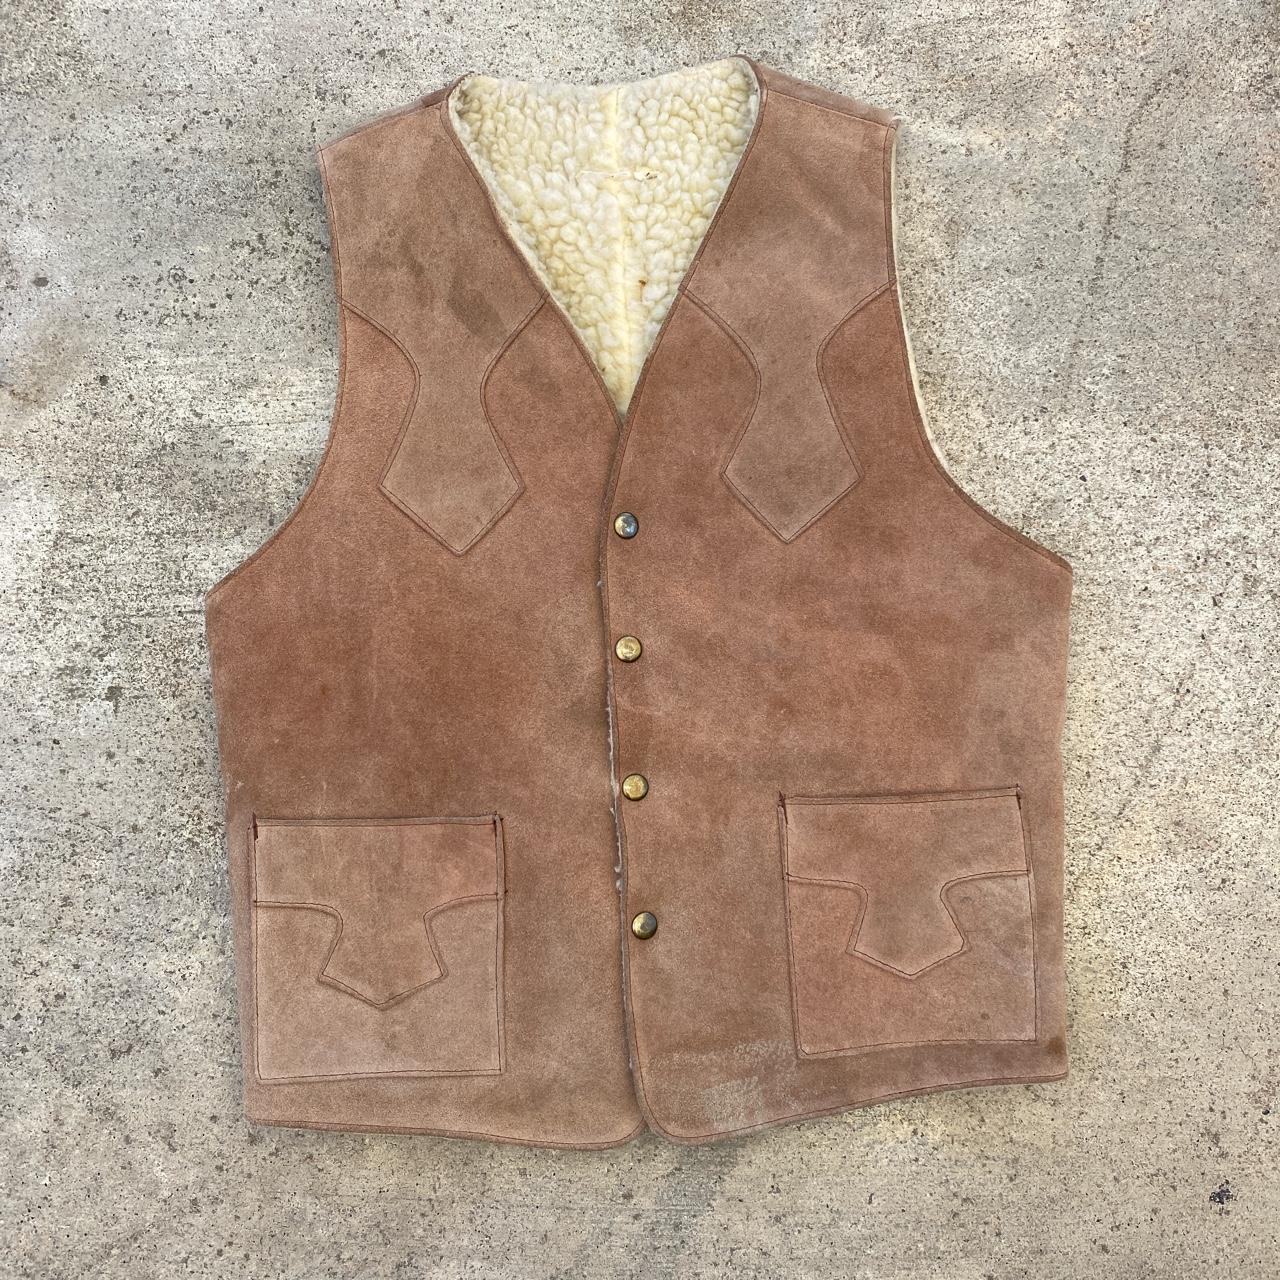 Vintage Light Brown Cool Pattern 90s Vest... - Depop